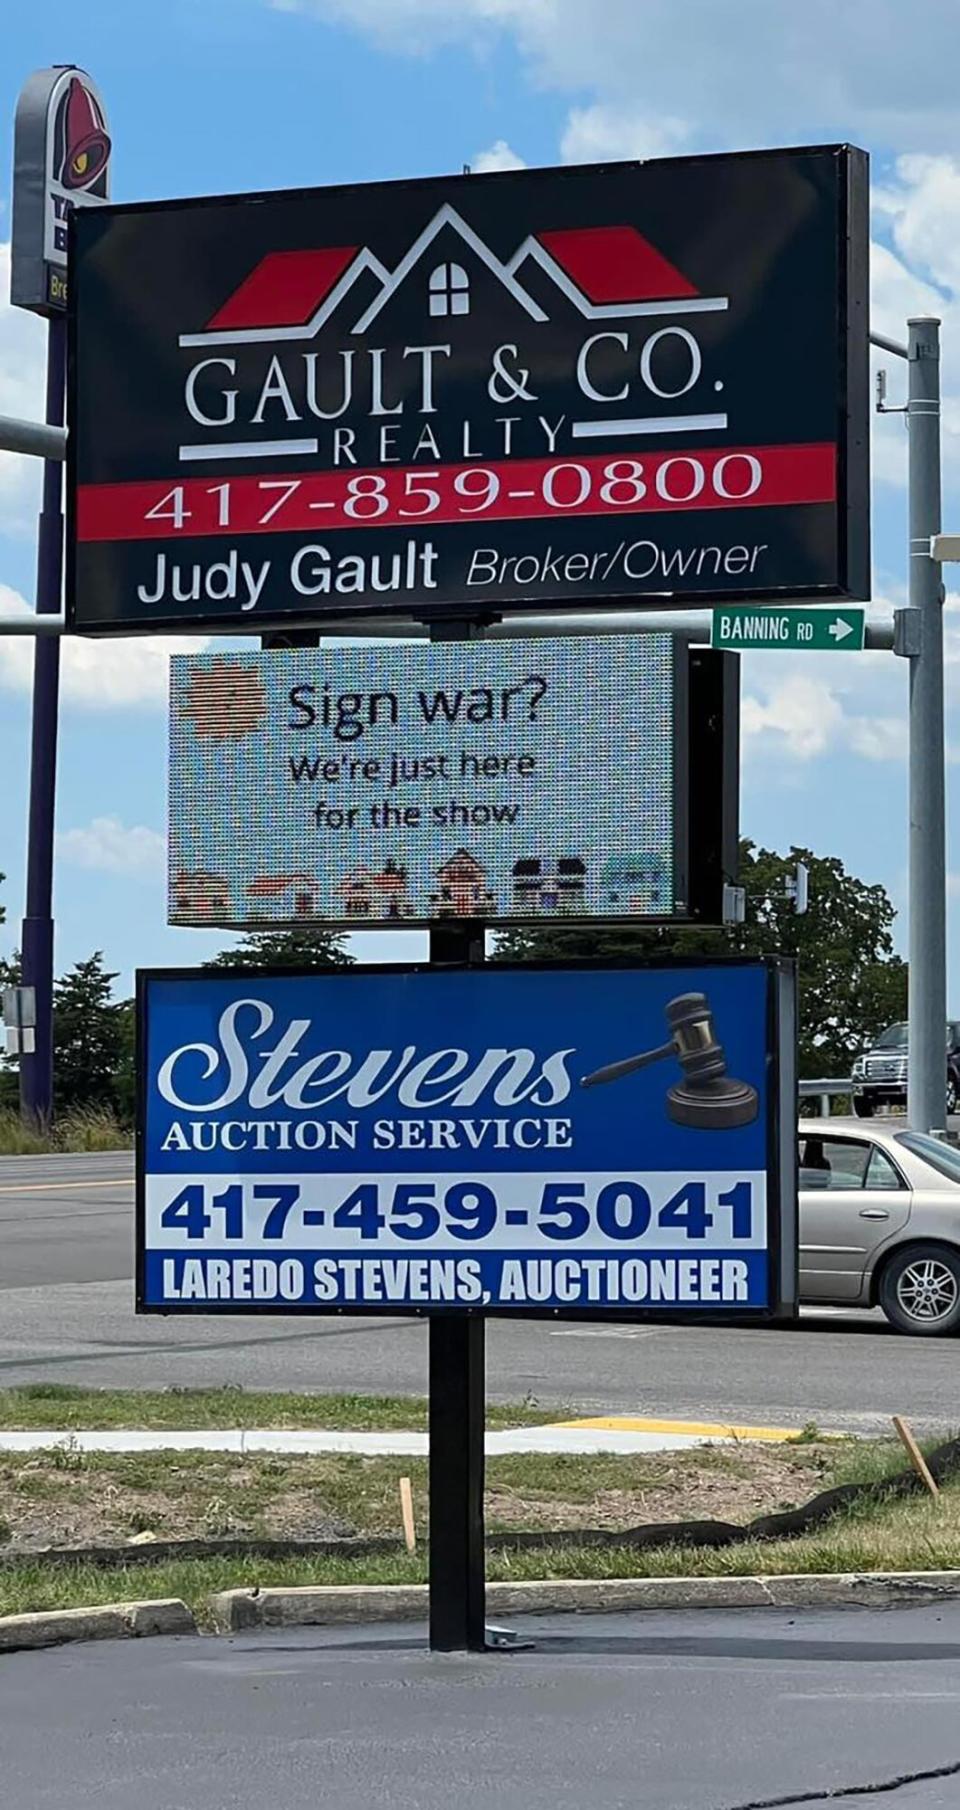 fun sign "war" going on in MO